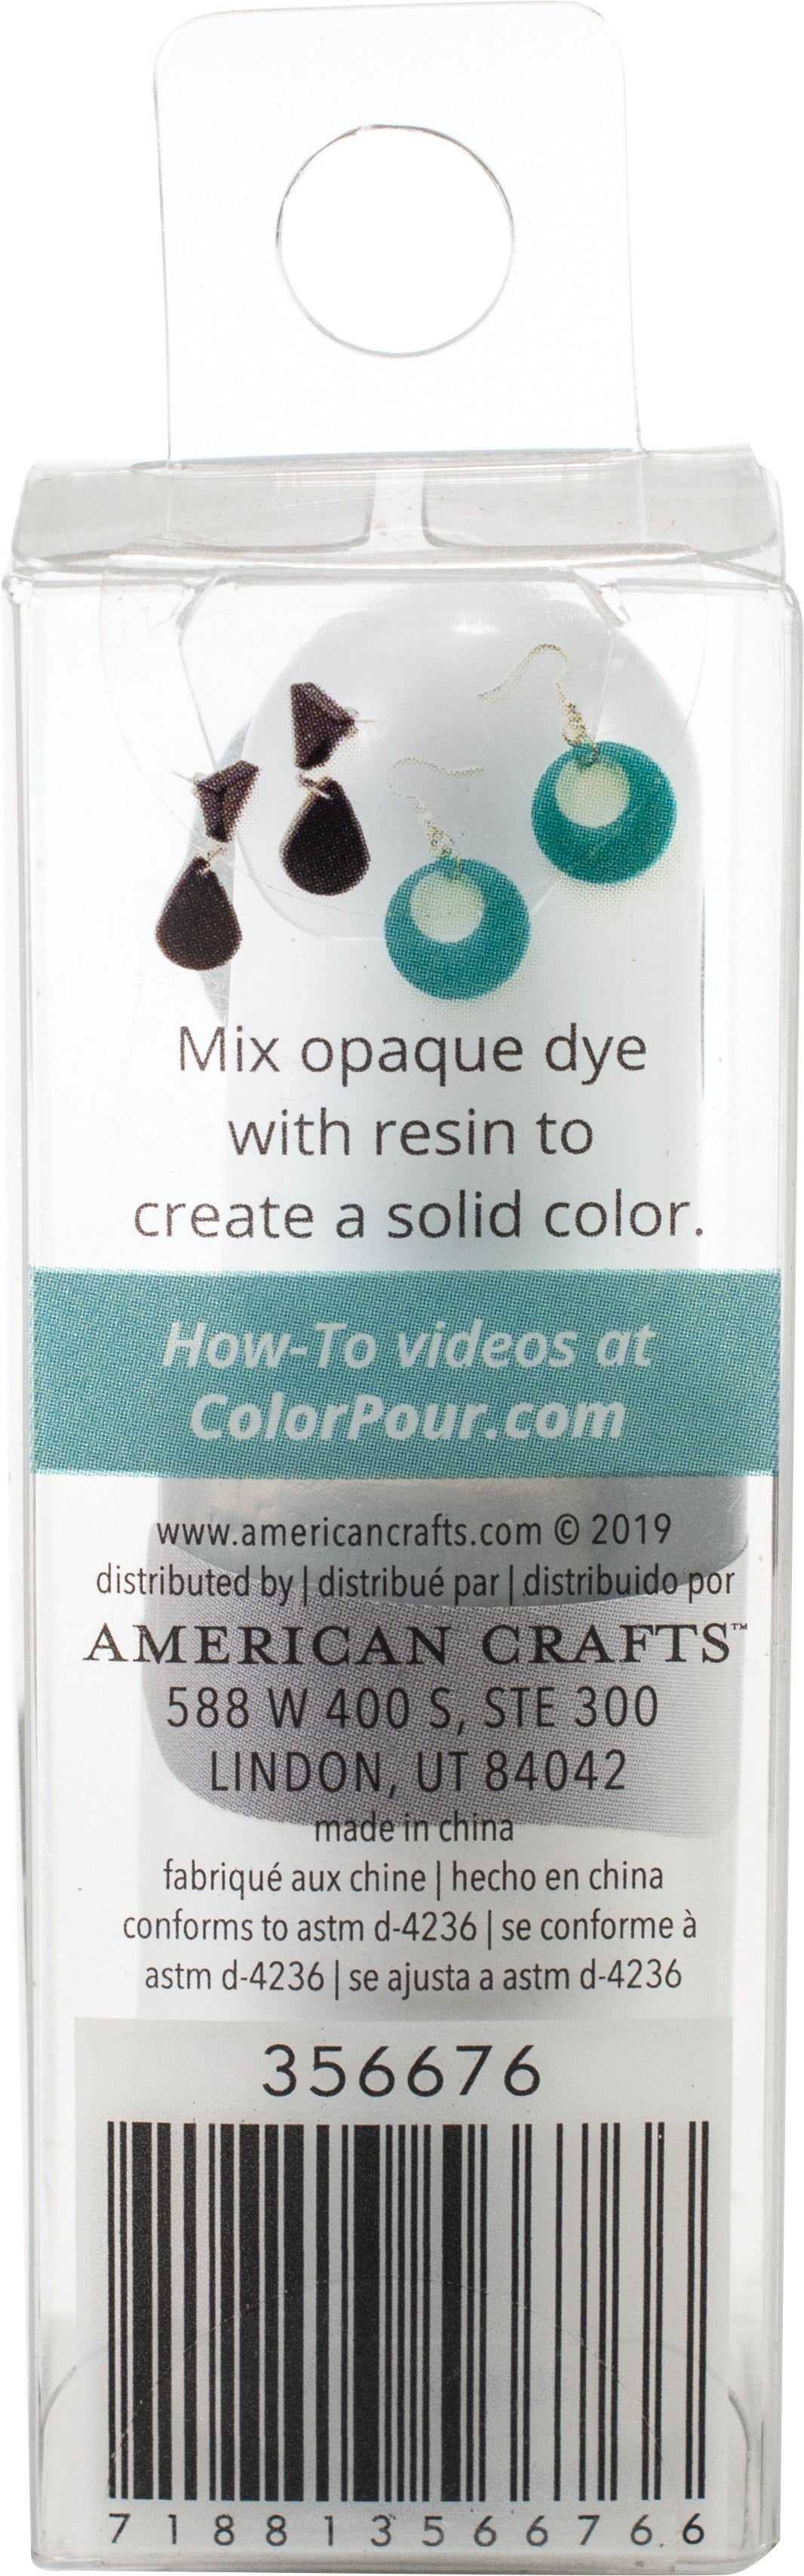 American Crafts™ Color Pour Magic 2 Piece Opaque Gold Paint